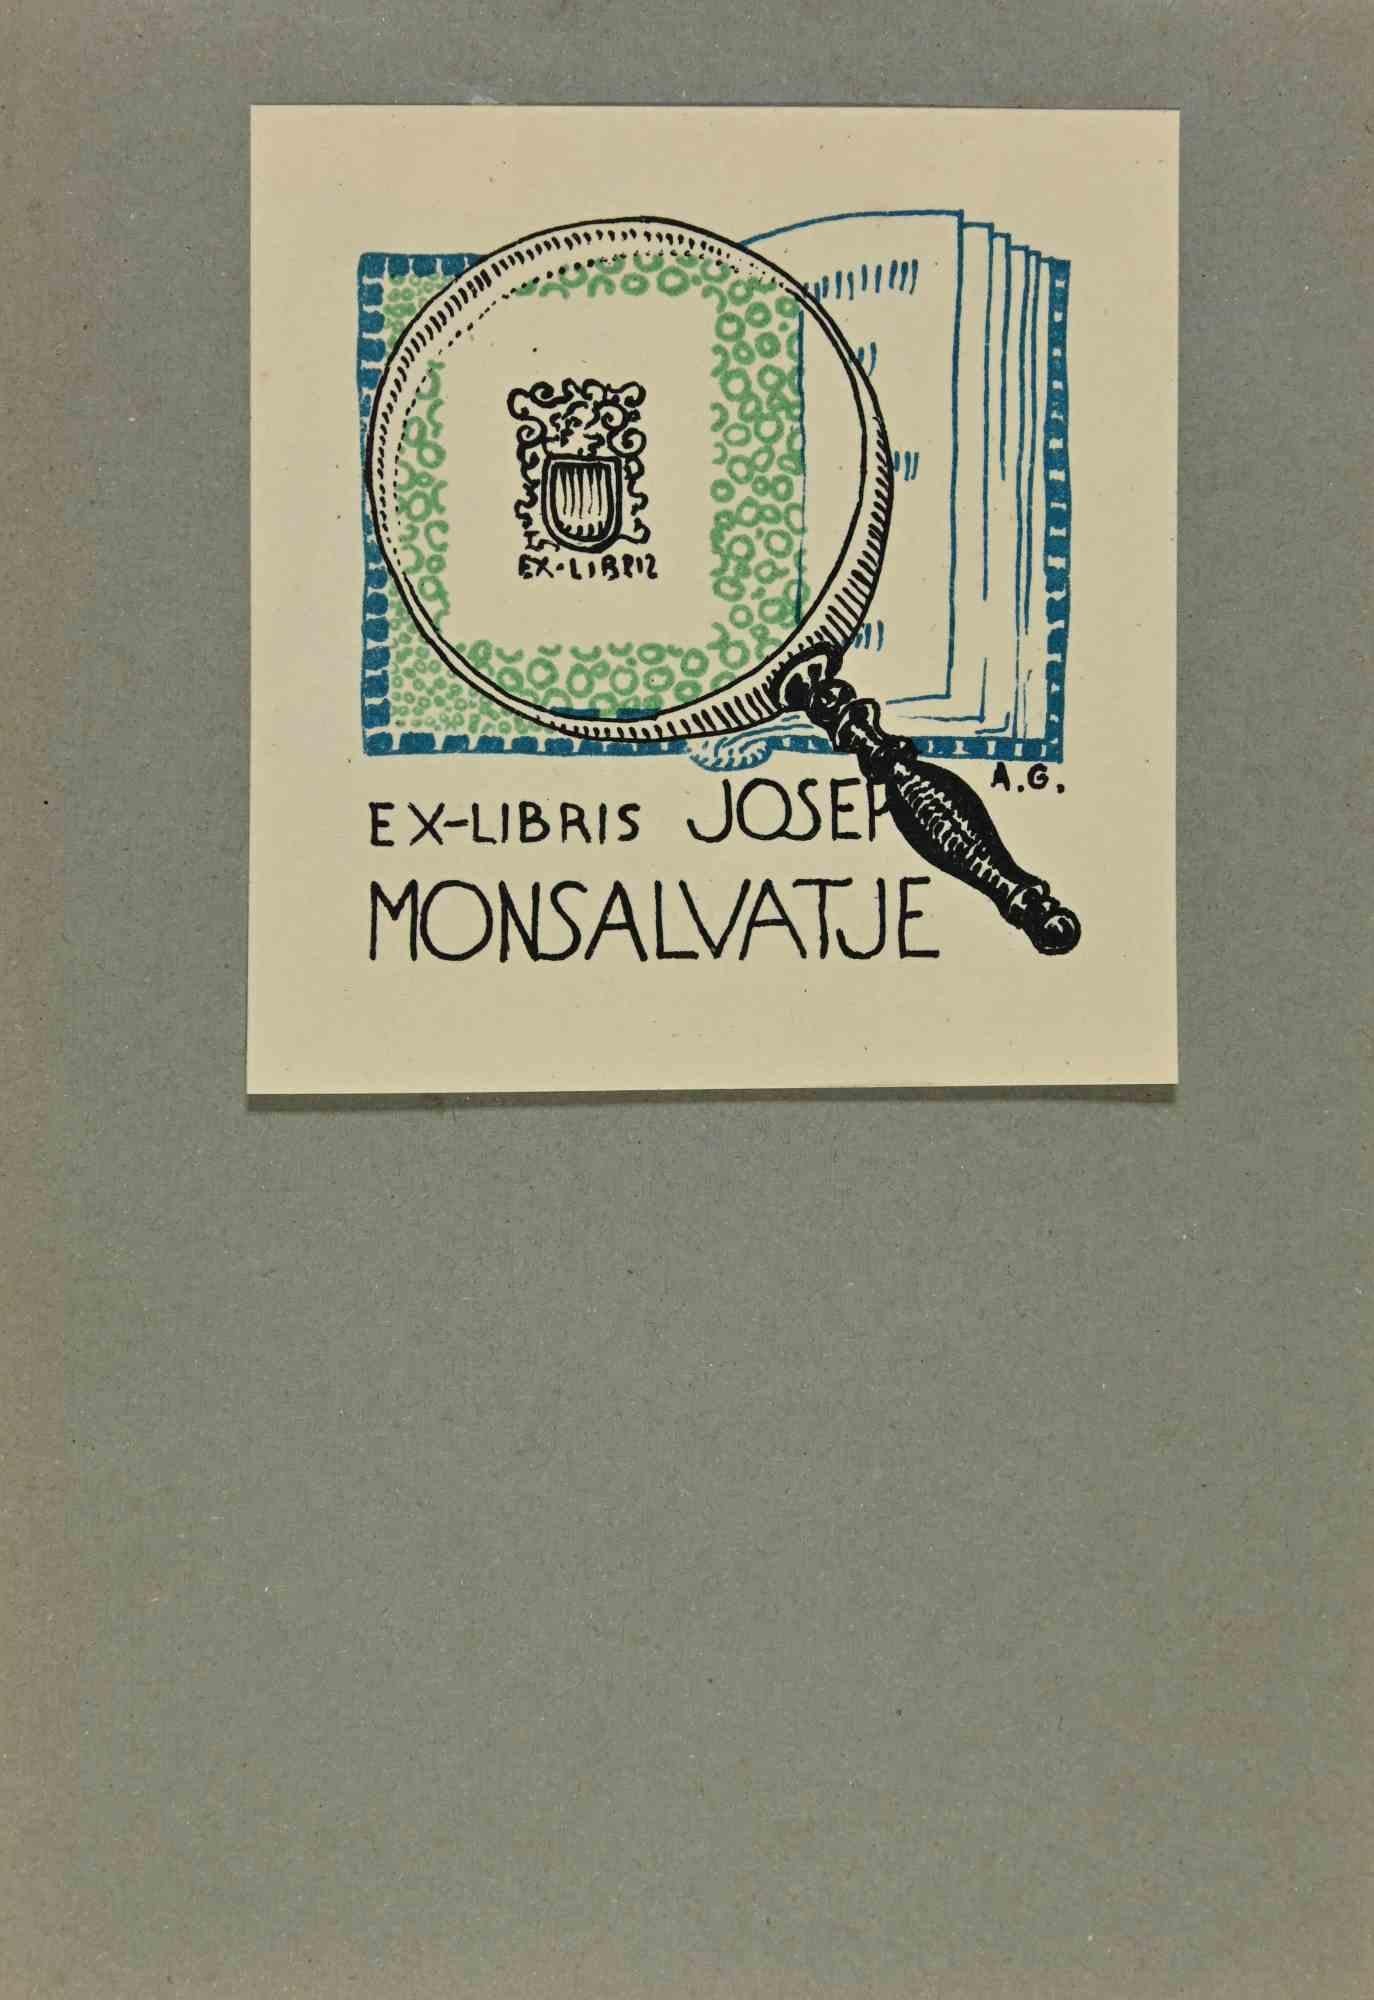  Ex Libris - Josep Monsalvatje - Gravure sur bois - Début du 20e siècle